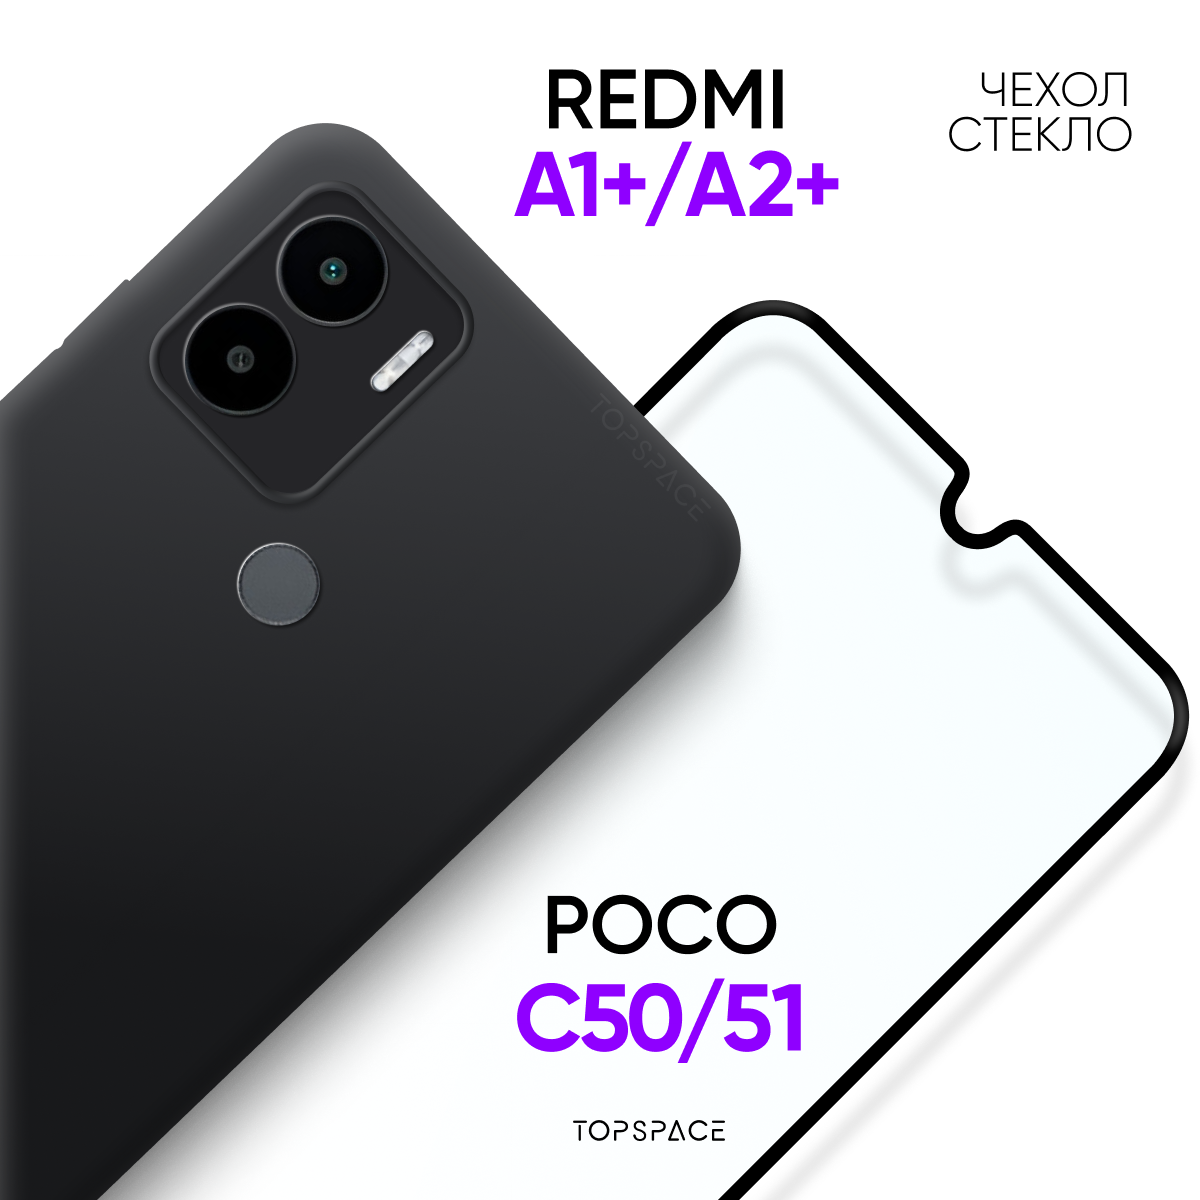 Комплект 2 в 1: Чехол №80 для Xiaomi Redmi A1+ (A2+) Poco C50 (C51) + стекло /бампер с защитой камеры на Ксиаоми Редми А1, А2 плюс / Поко Ц50, Ц51